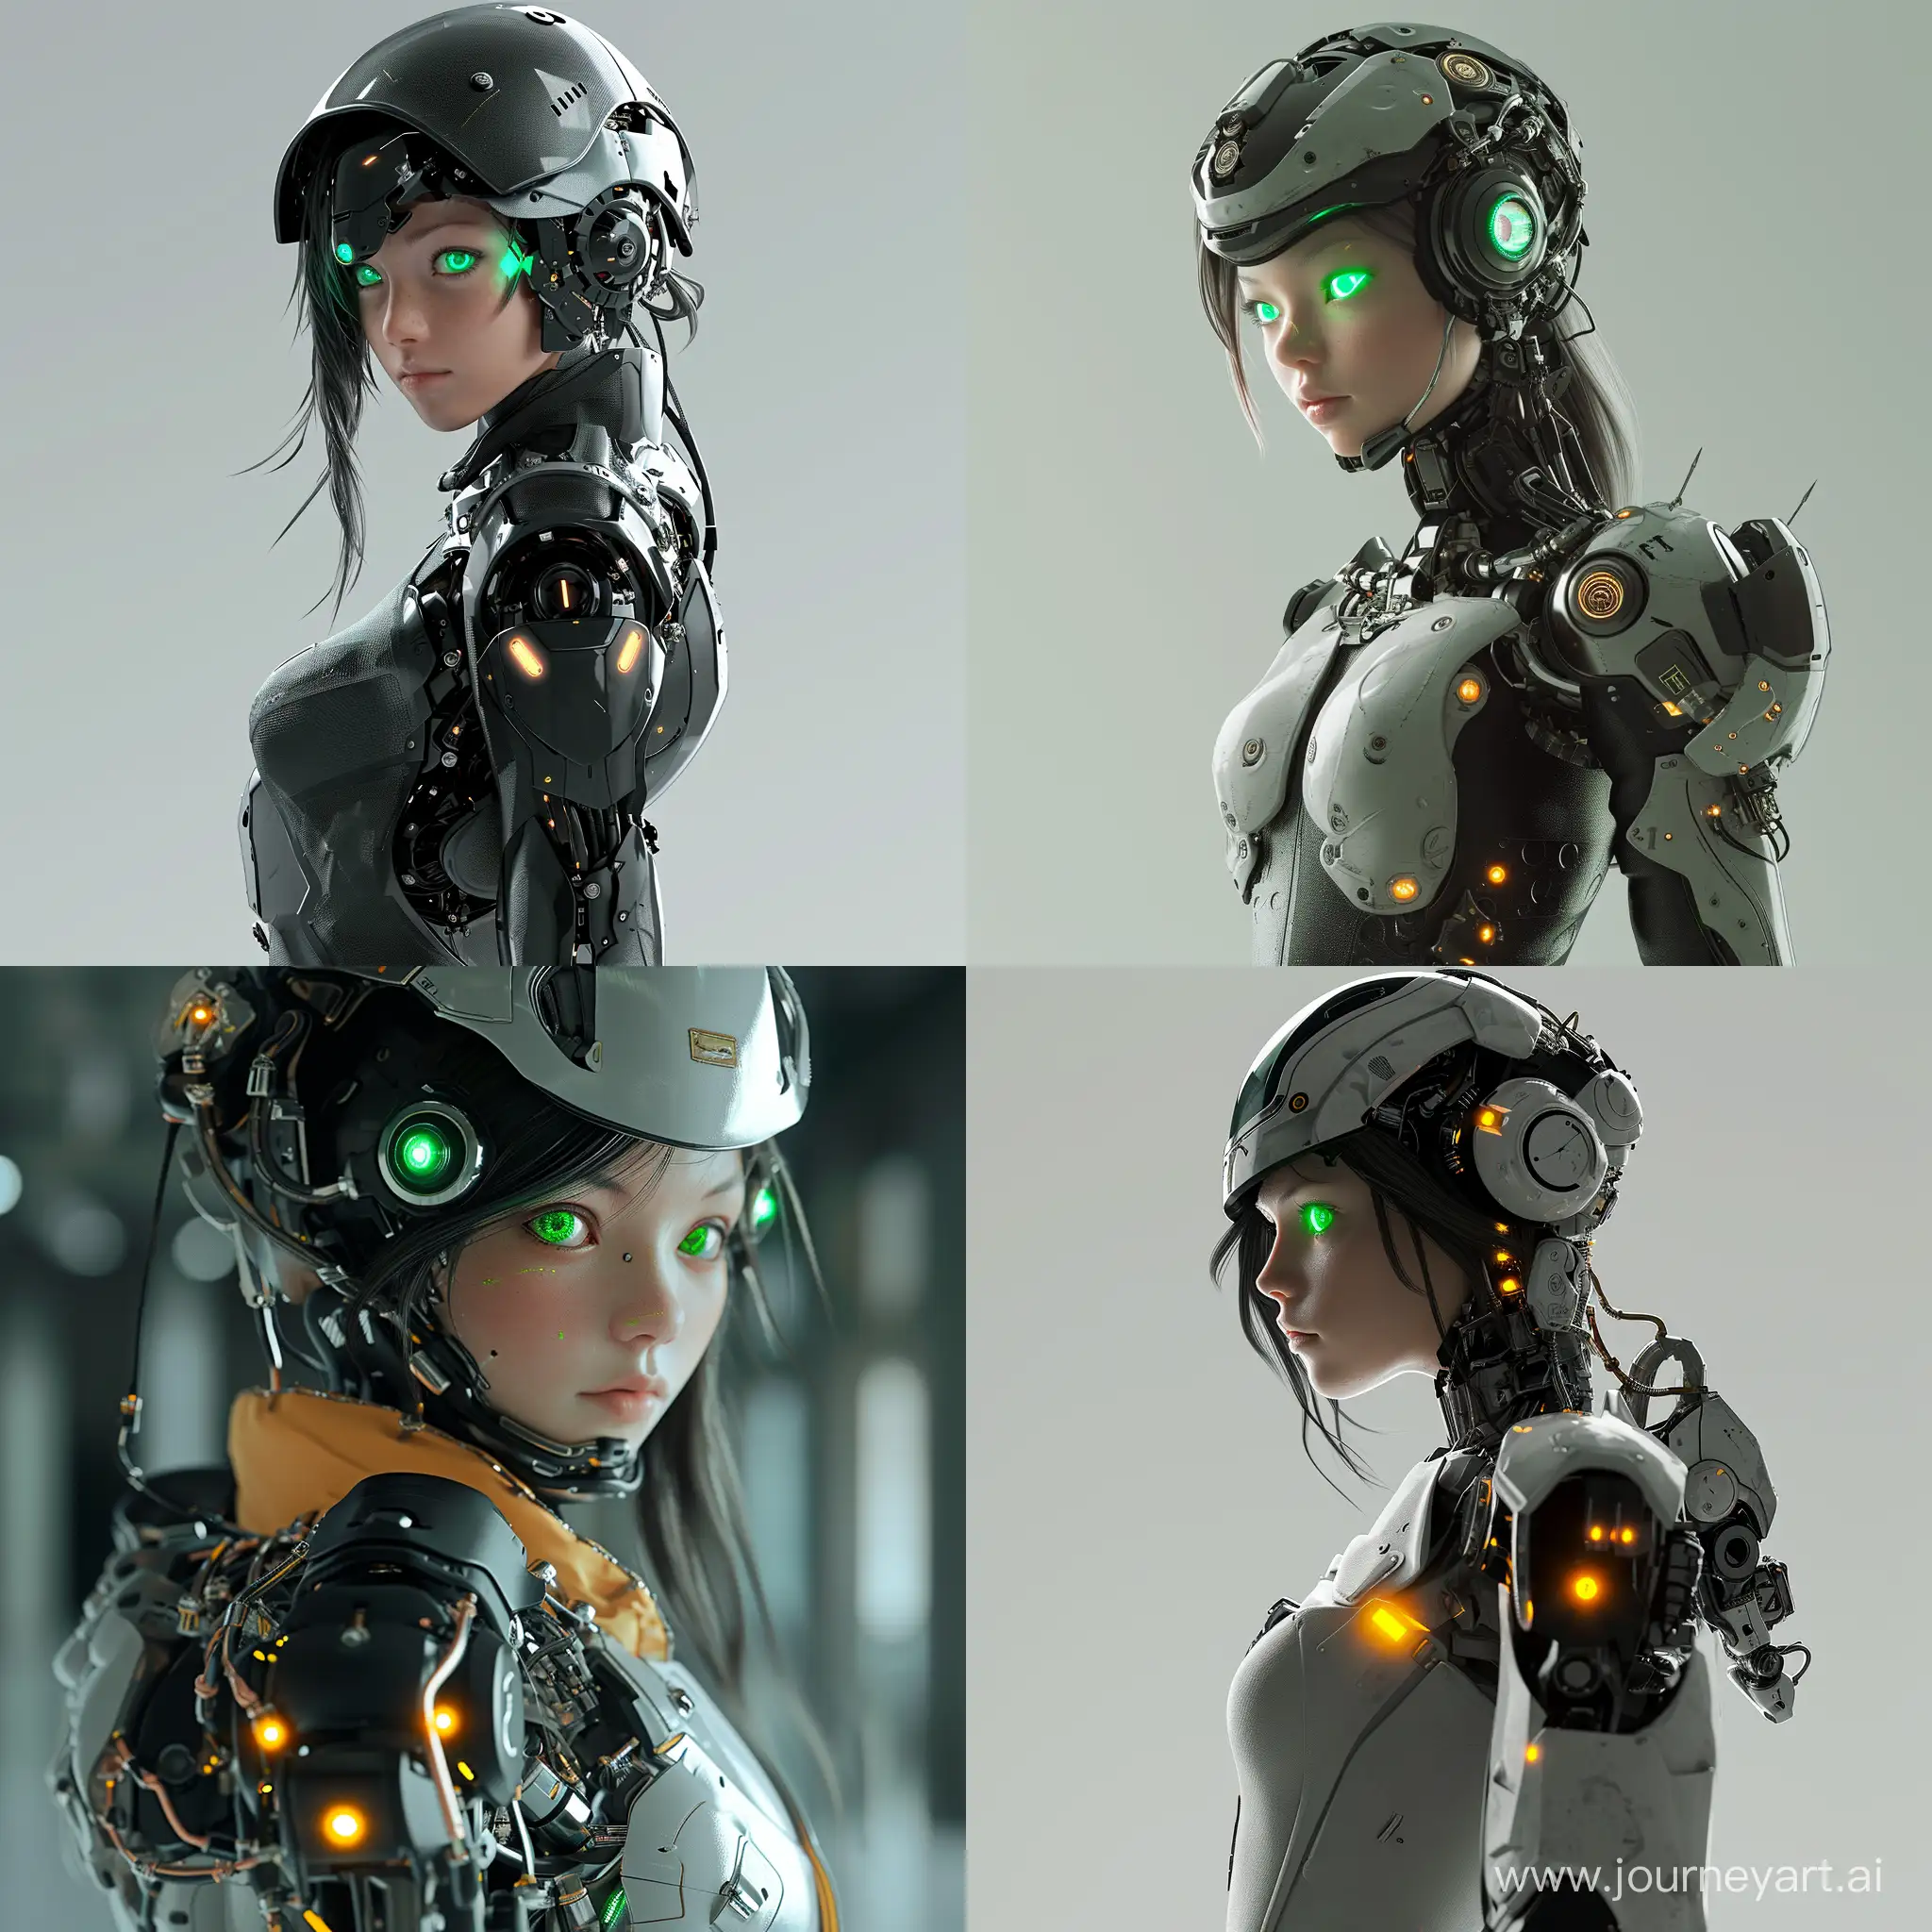 Glowing-Cyborg-Girl-in-Power-Armor-Futuristic-SciFi-Mecha-Musume